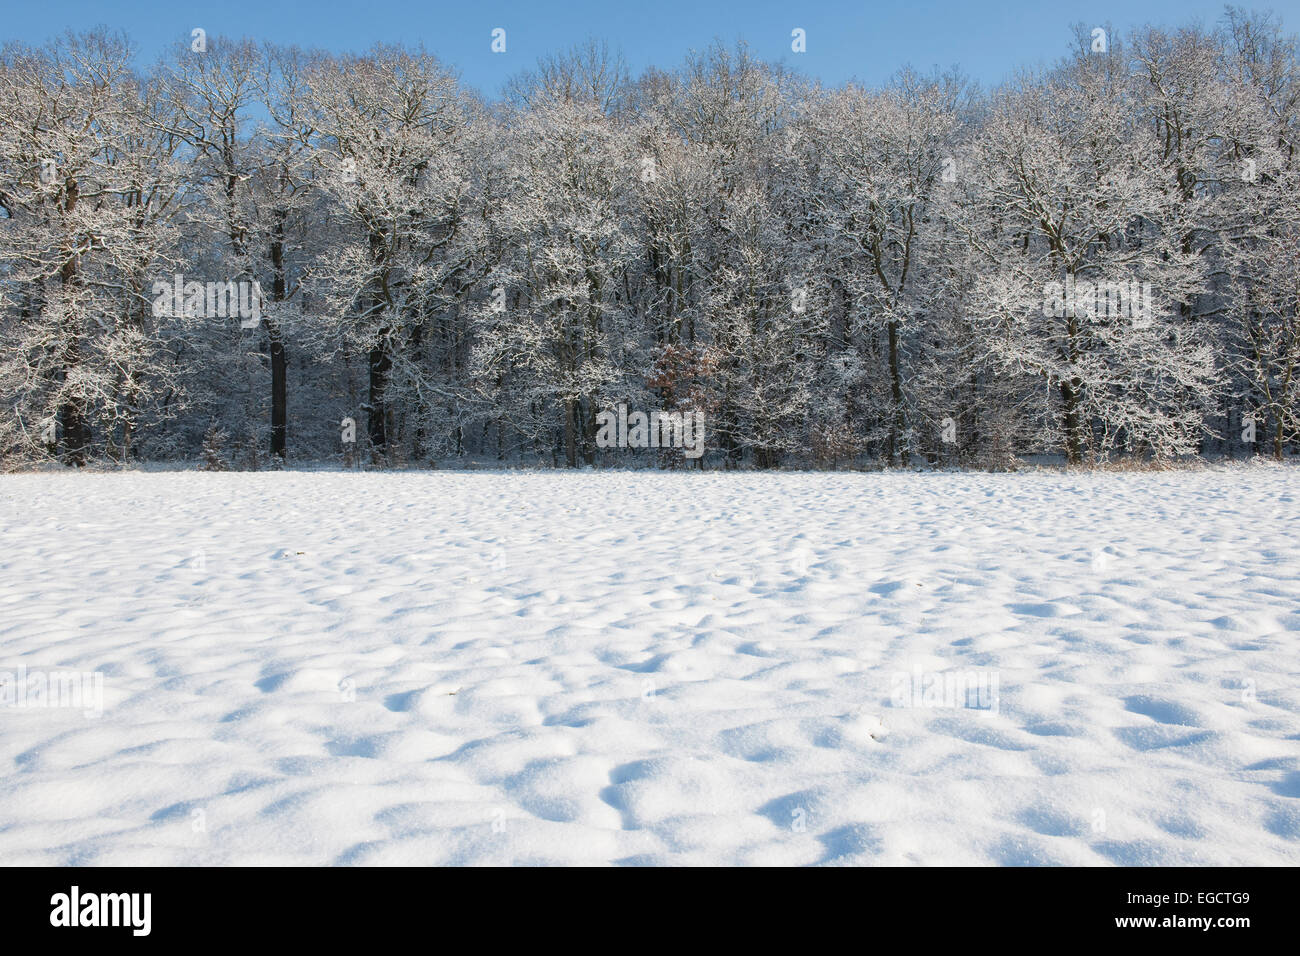 Árboles cubiertos de nieve y un prado cubierto de nieve, Turingia, Alemania Foto de stock